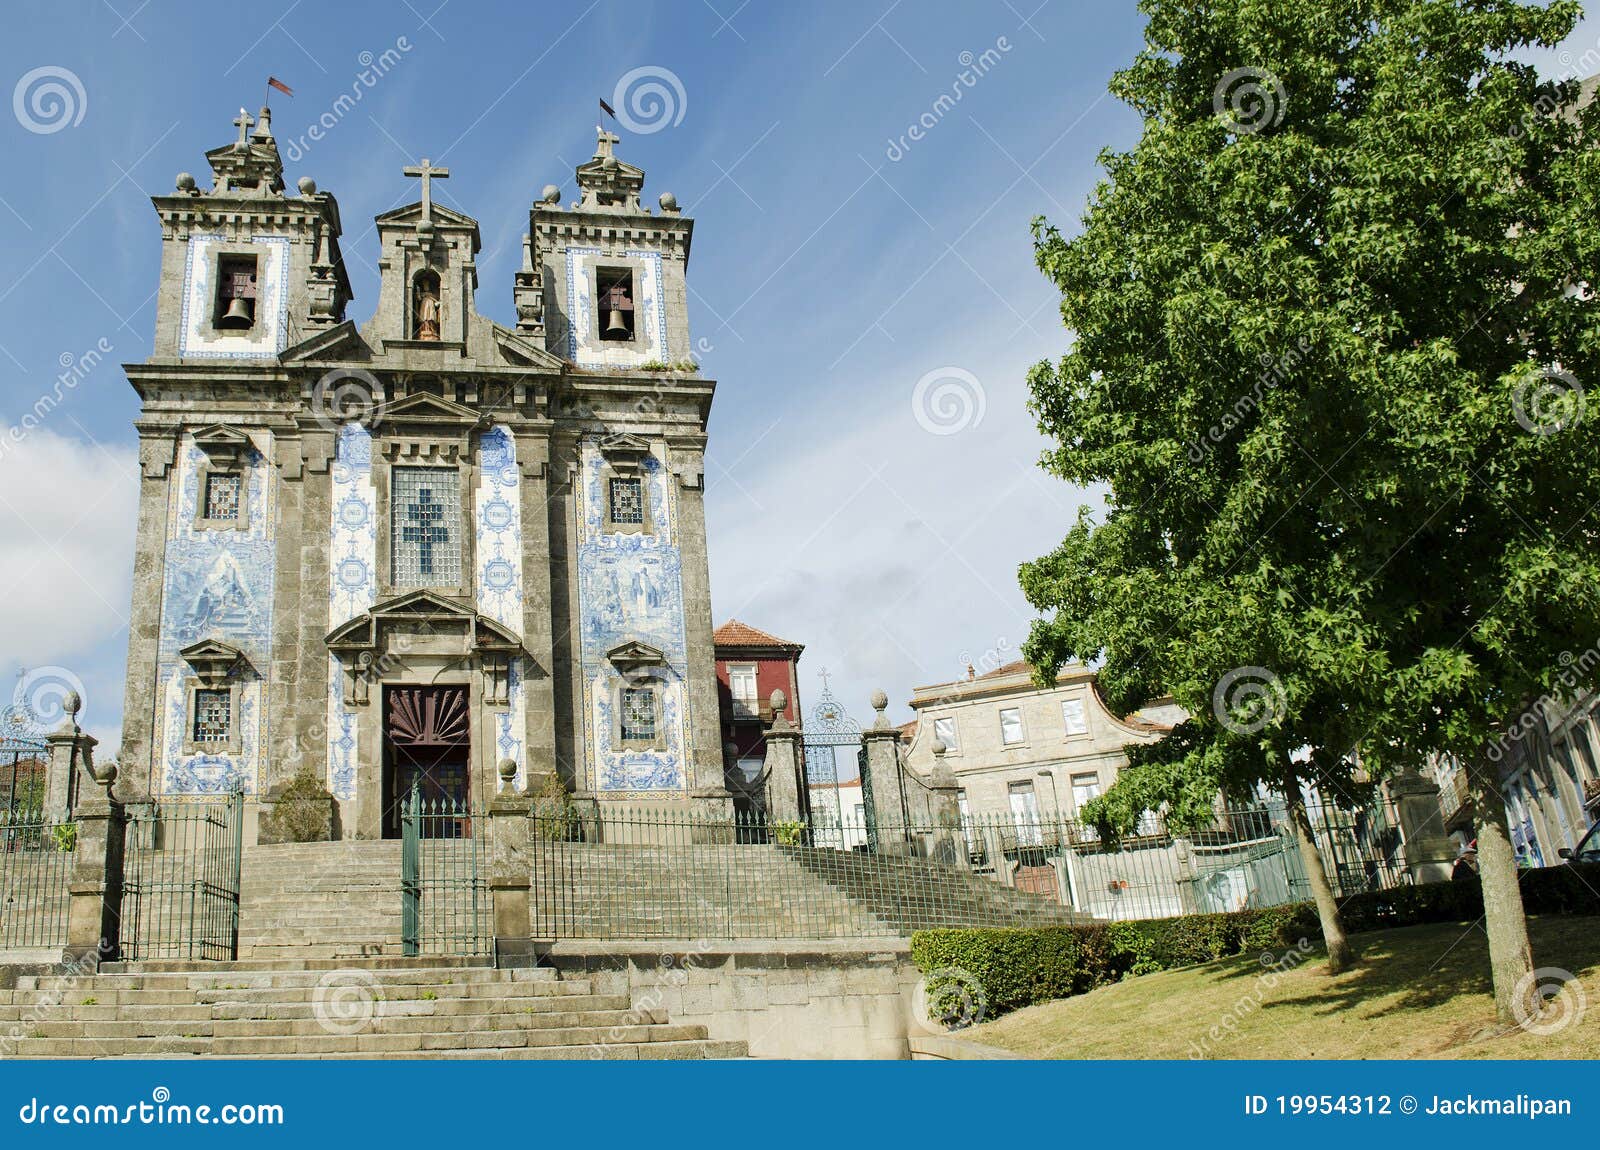 santo ildefonso church in porto portugal